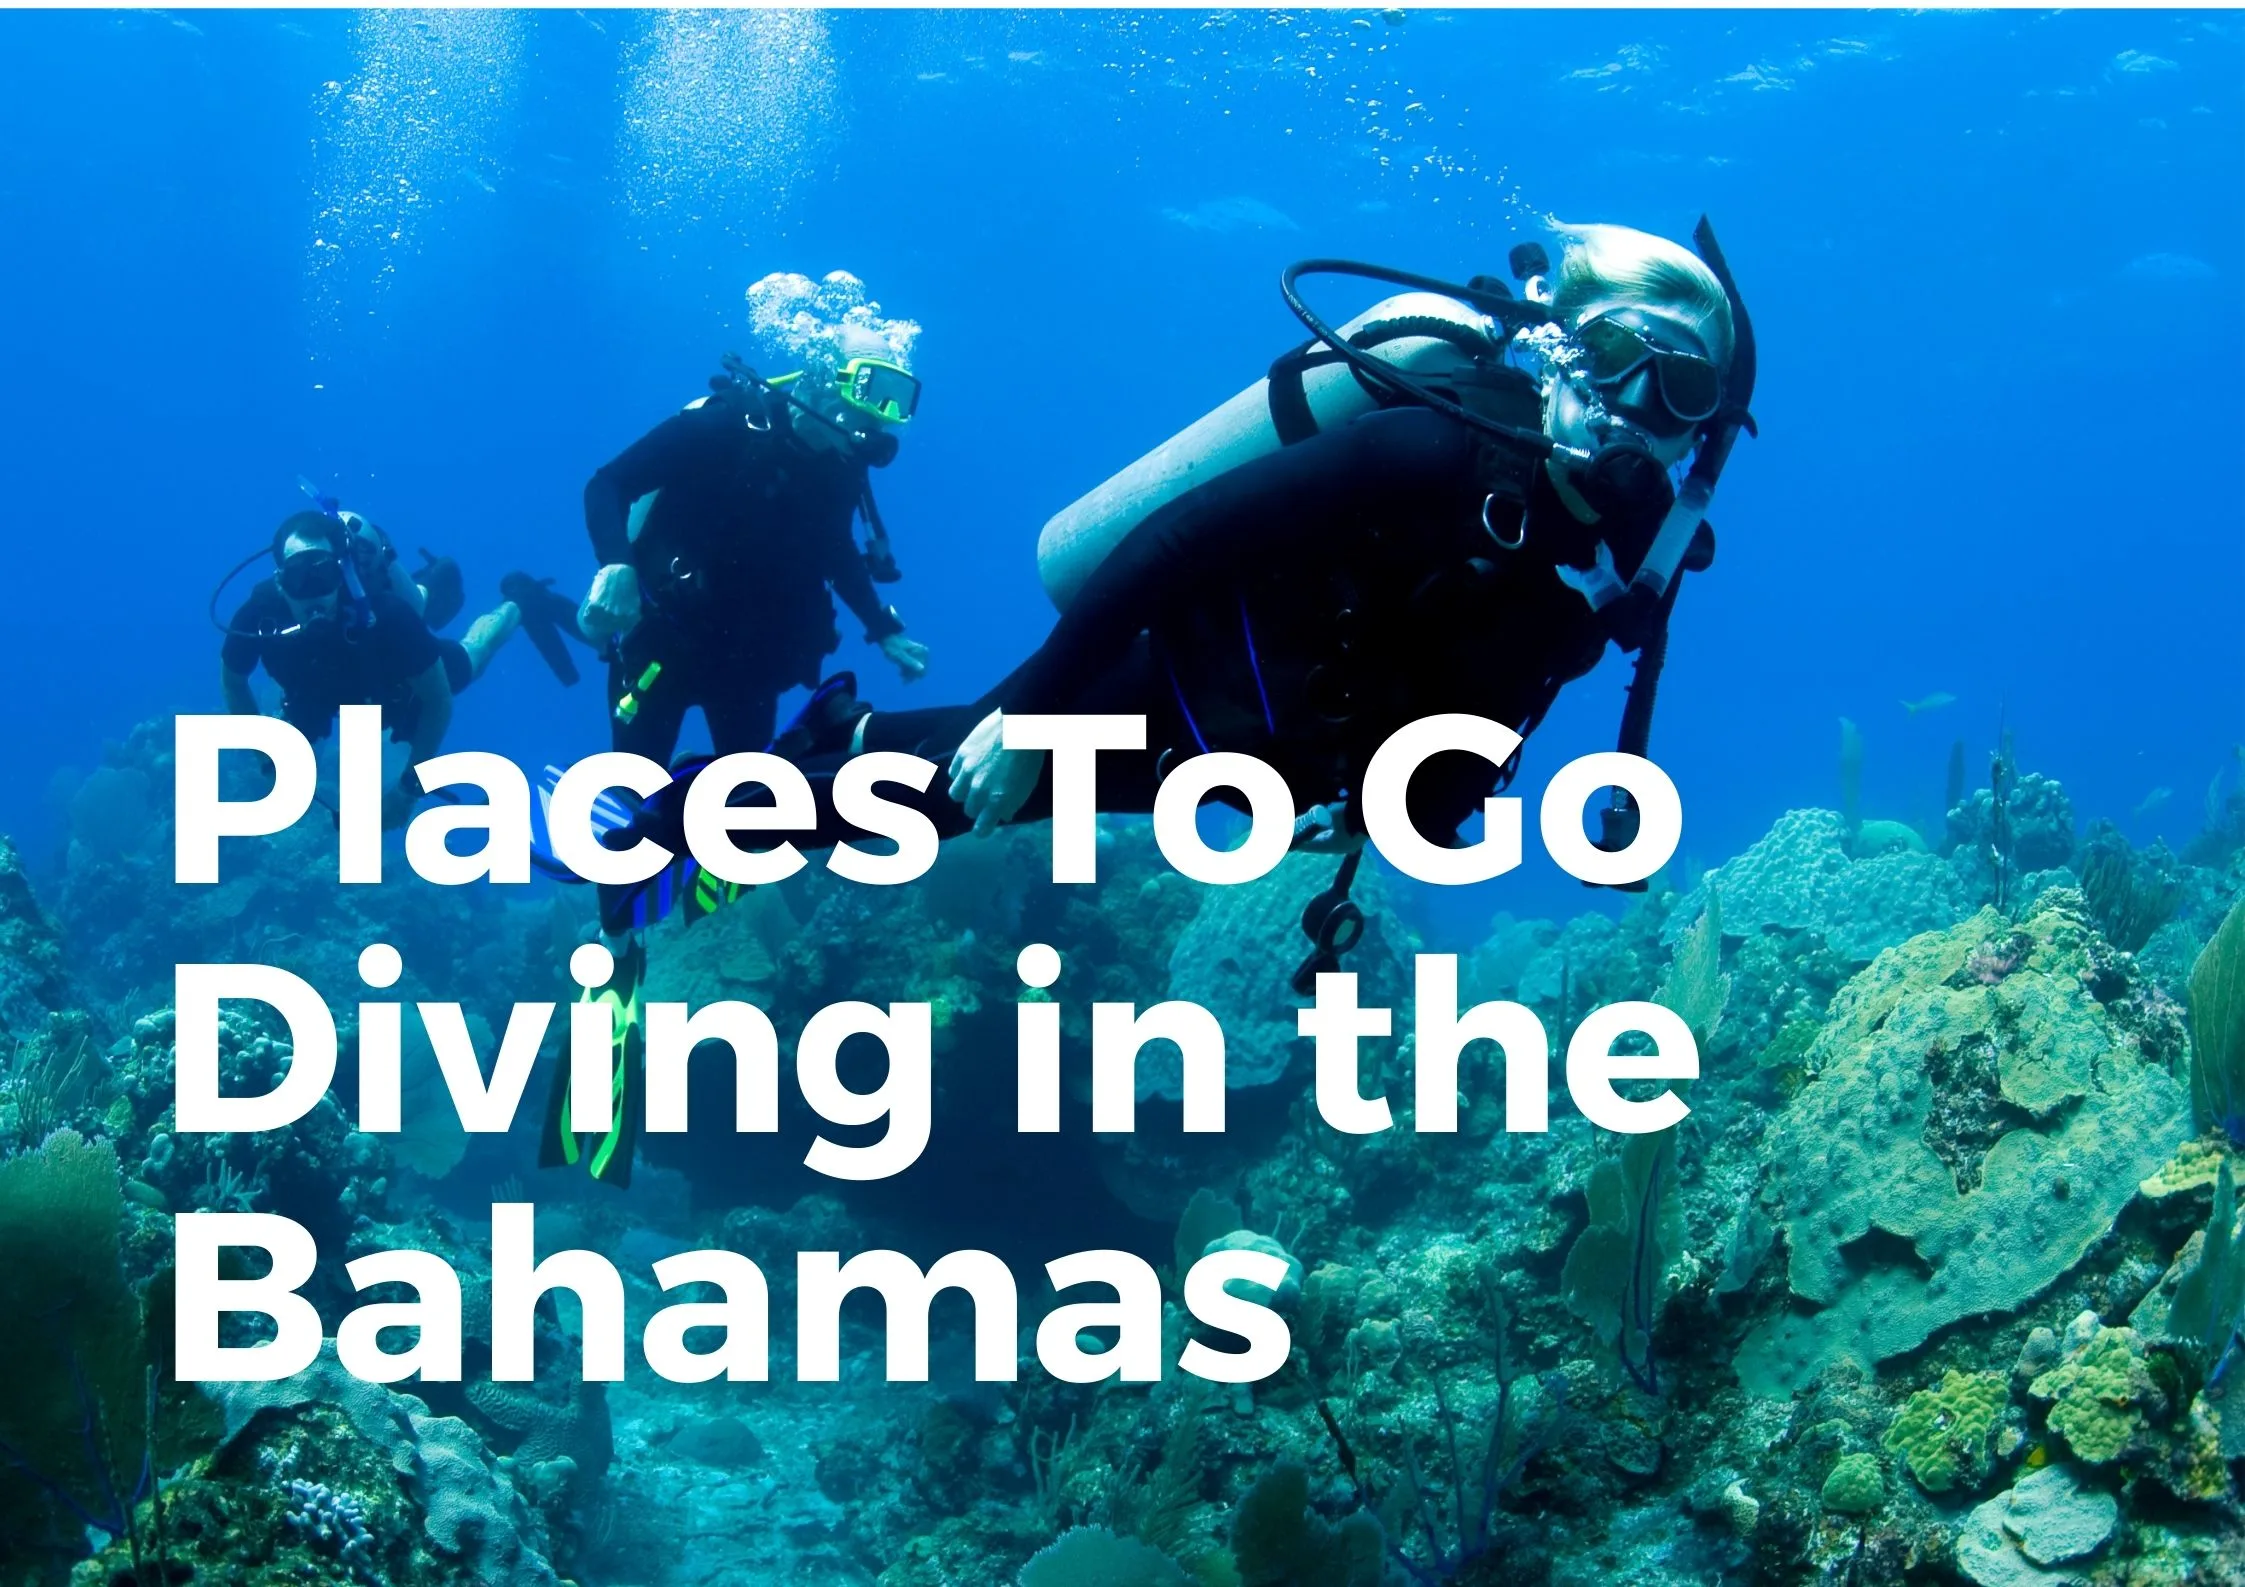 Bahamas Diving Spots